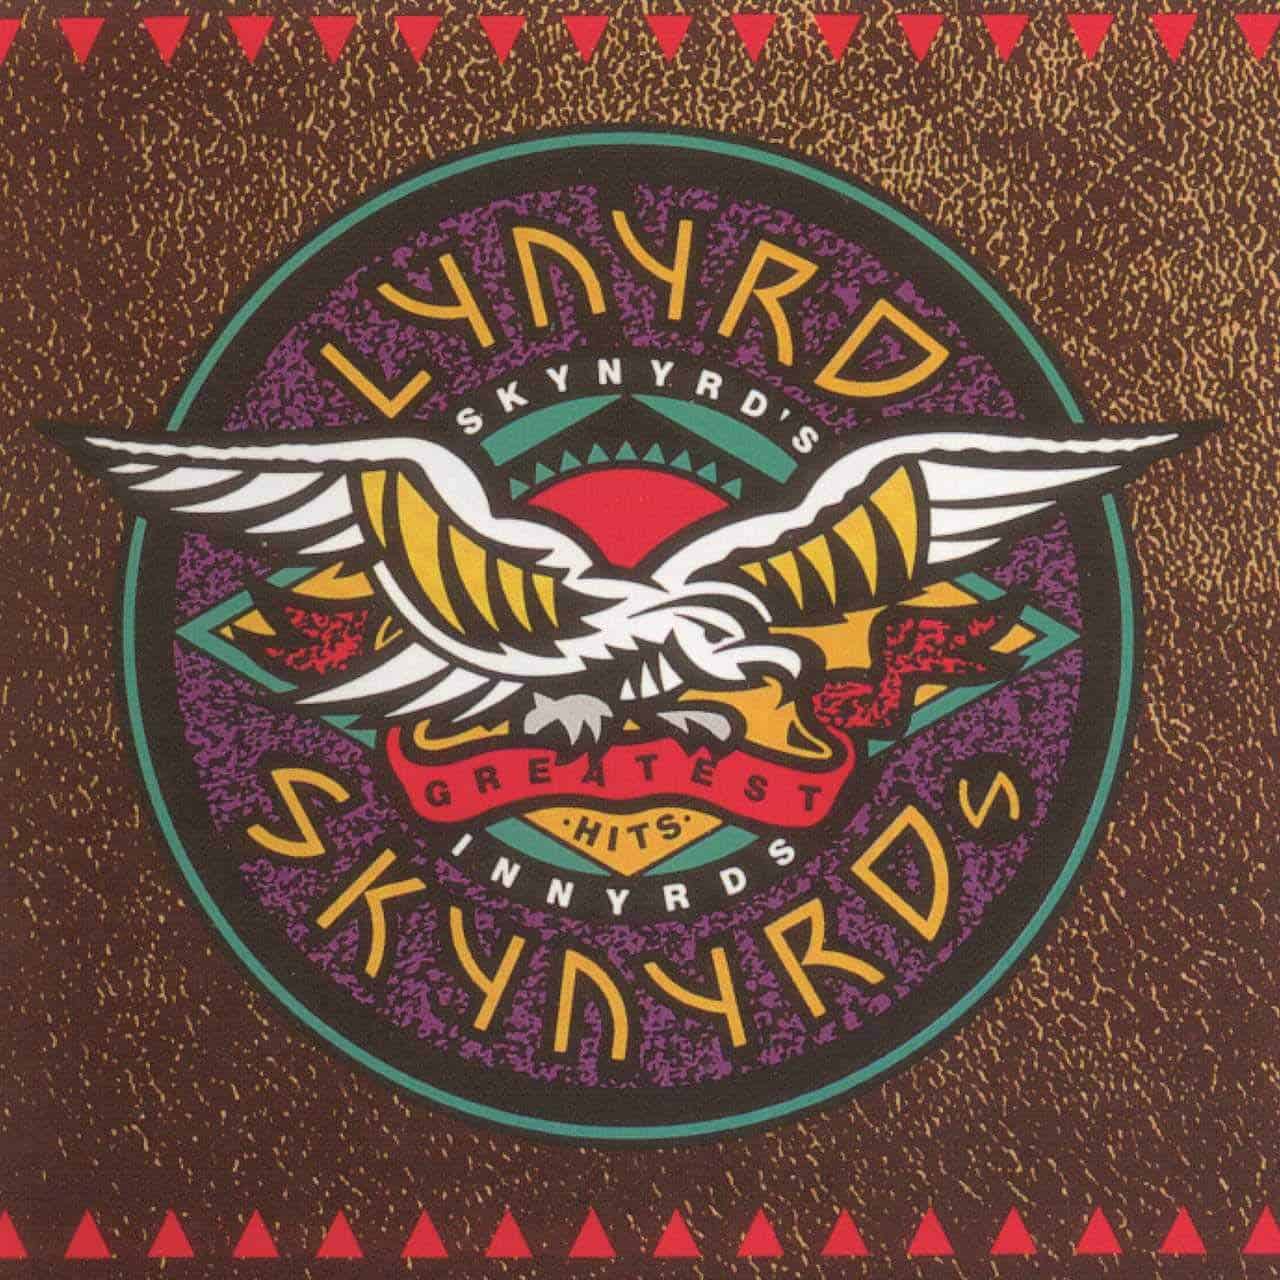 lynyrd-skynyrd-skynyrds-innyrds-their-greatest-hits-vinyl-record-album-front